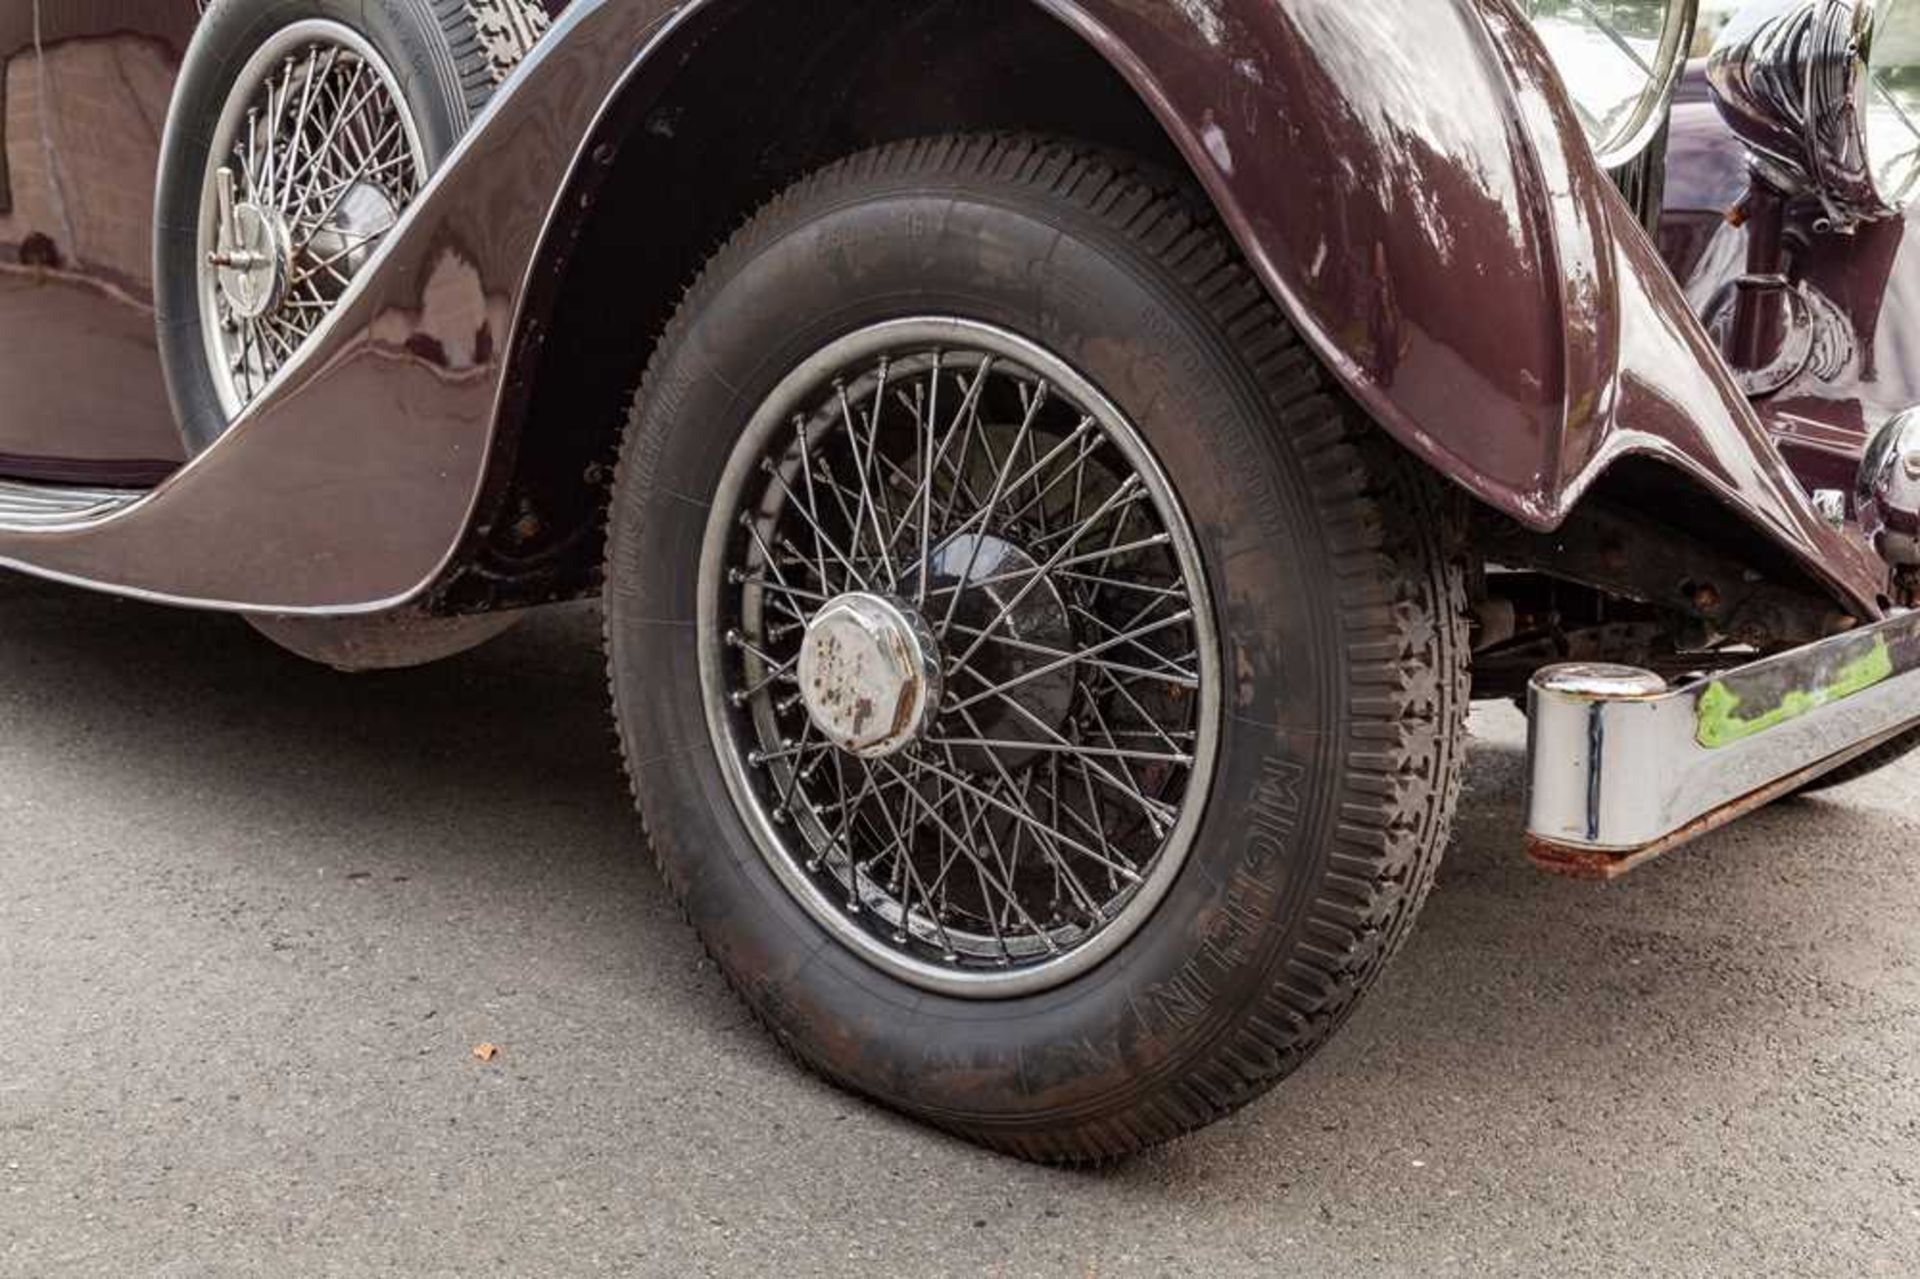 1937 Bentley 4.25 Litre Pillarless Sports Saloon Coachwork by Vanden Plas - Image 55 of 62